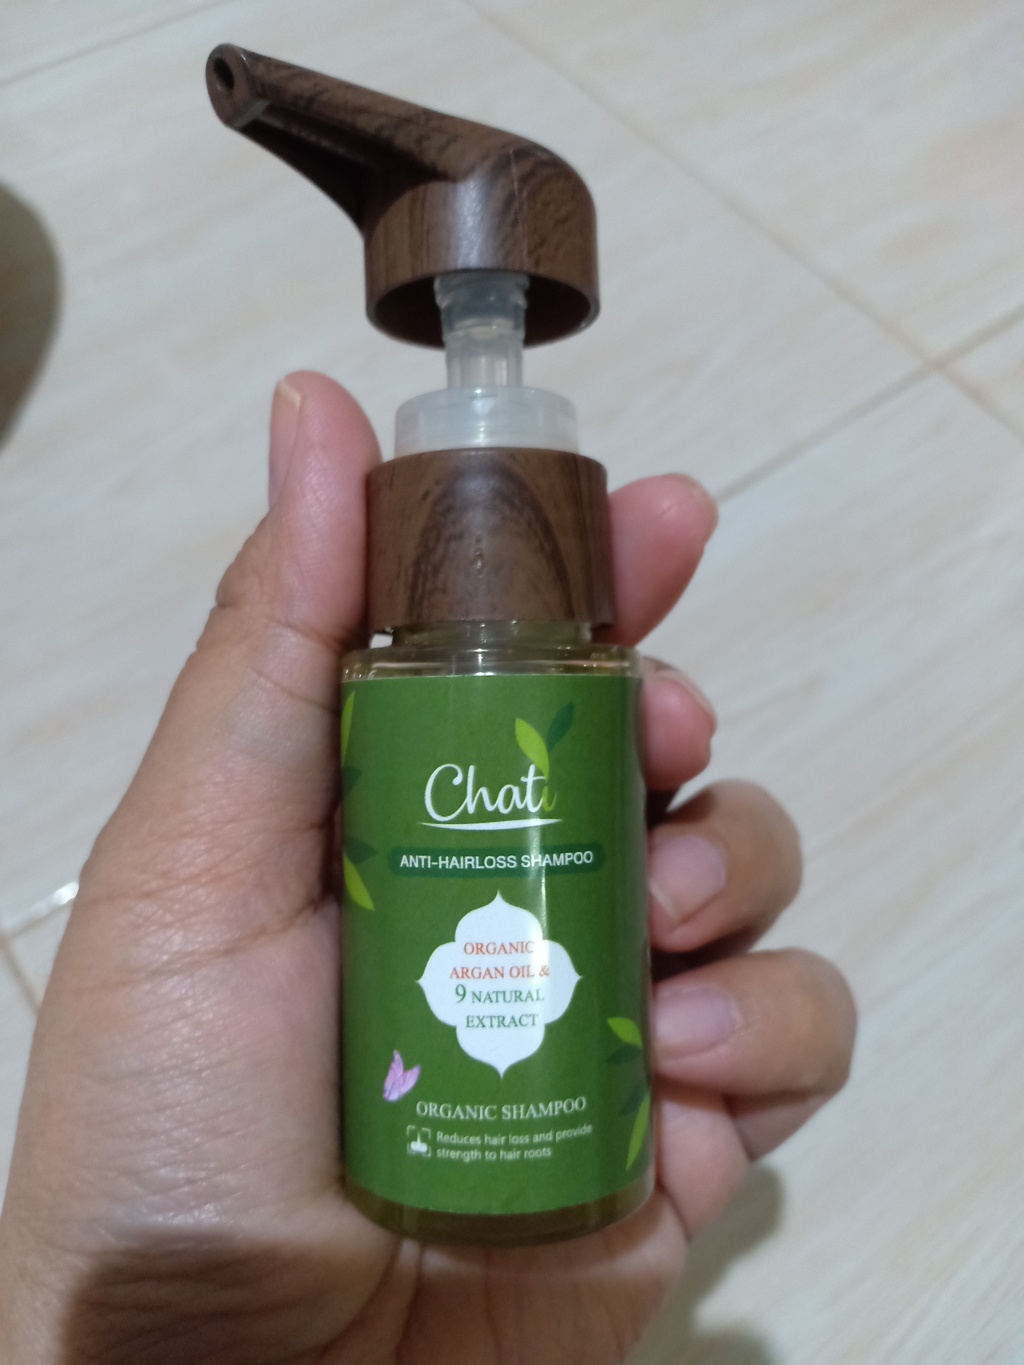 Chati Anti-Hairloss shampoo ฌาฏิแชมพู ลดผมขาดหลุดร่วง รีวิว